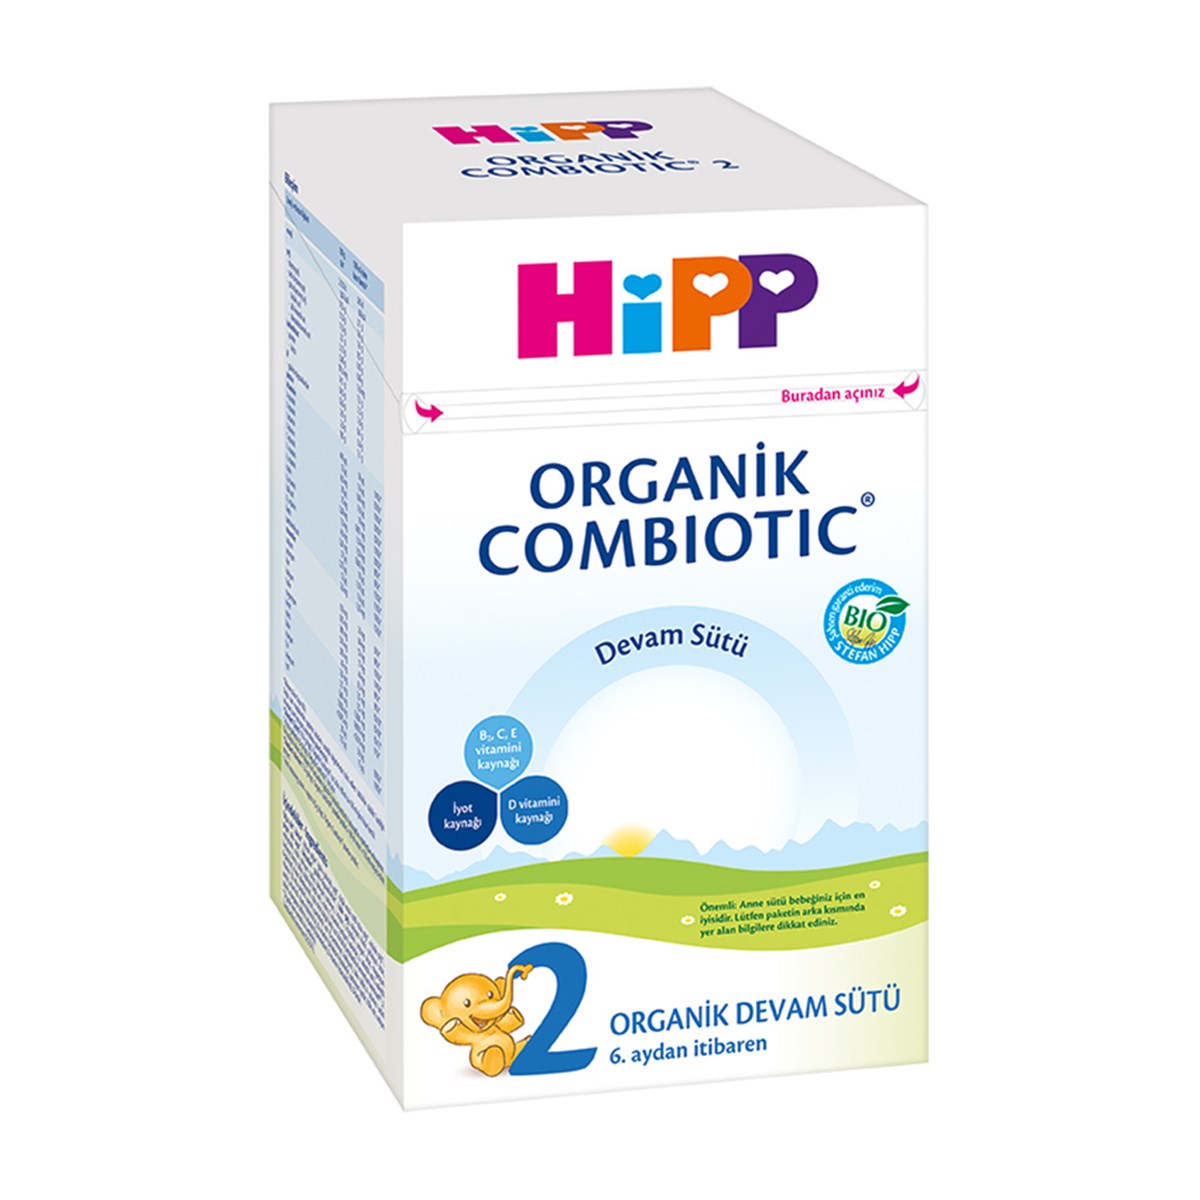 HiPP 2 Organik Combiotic Devam Sütü 800g | orjinal ürün garantisi ve aynı  gün kargo ile mamanevar.com'da